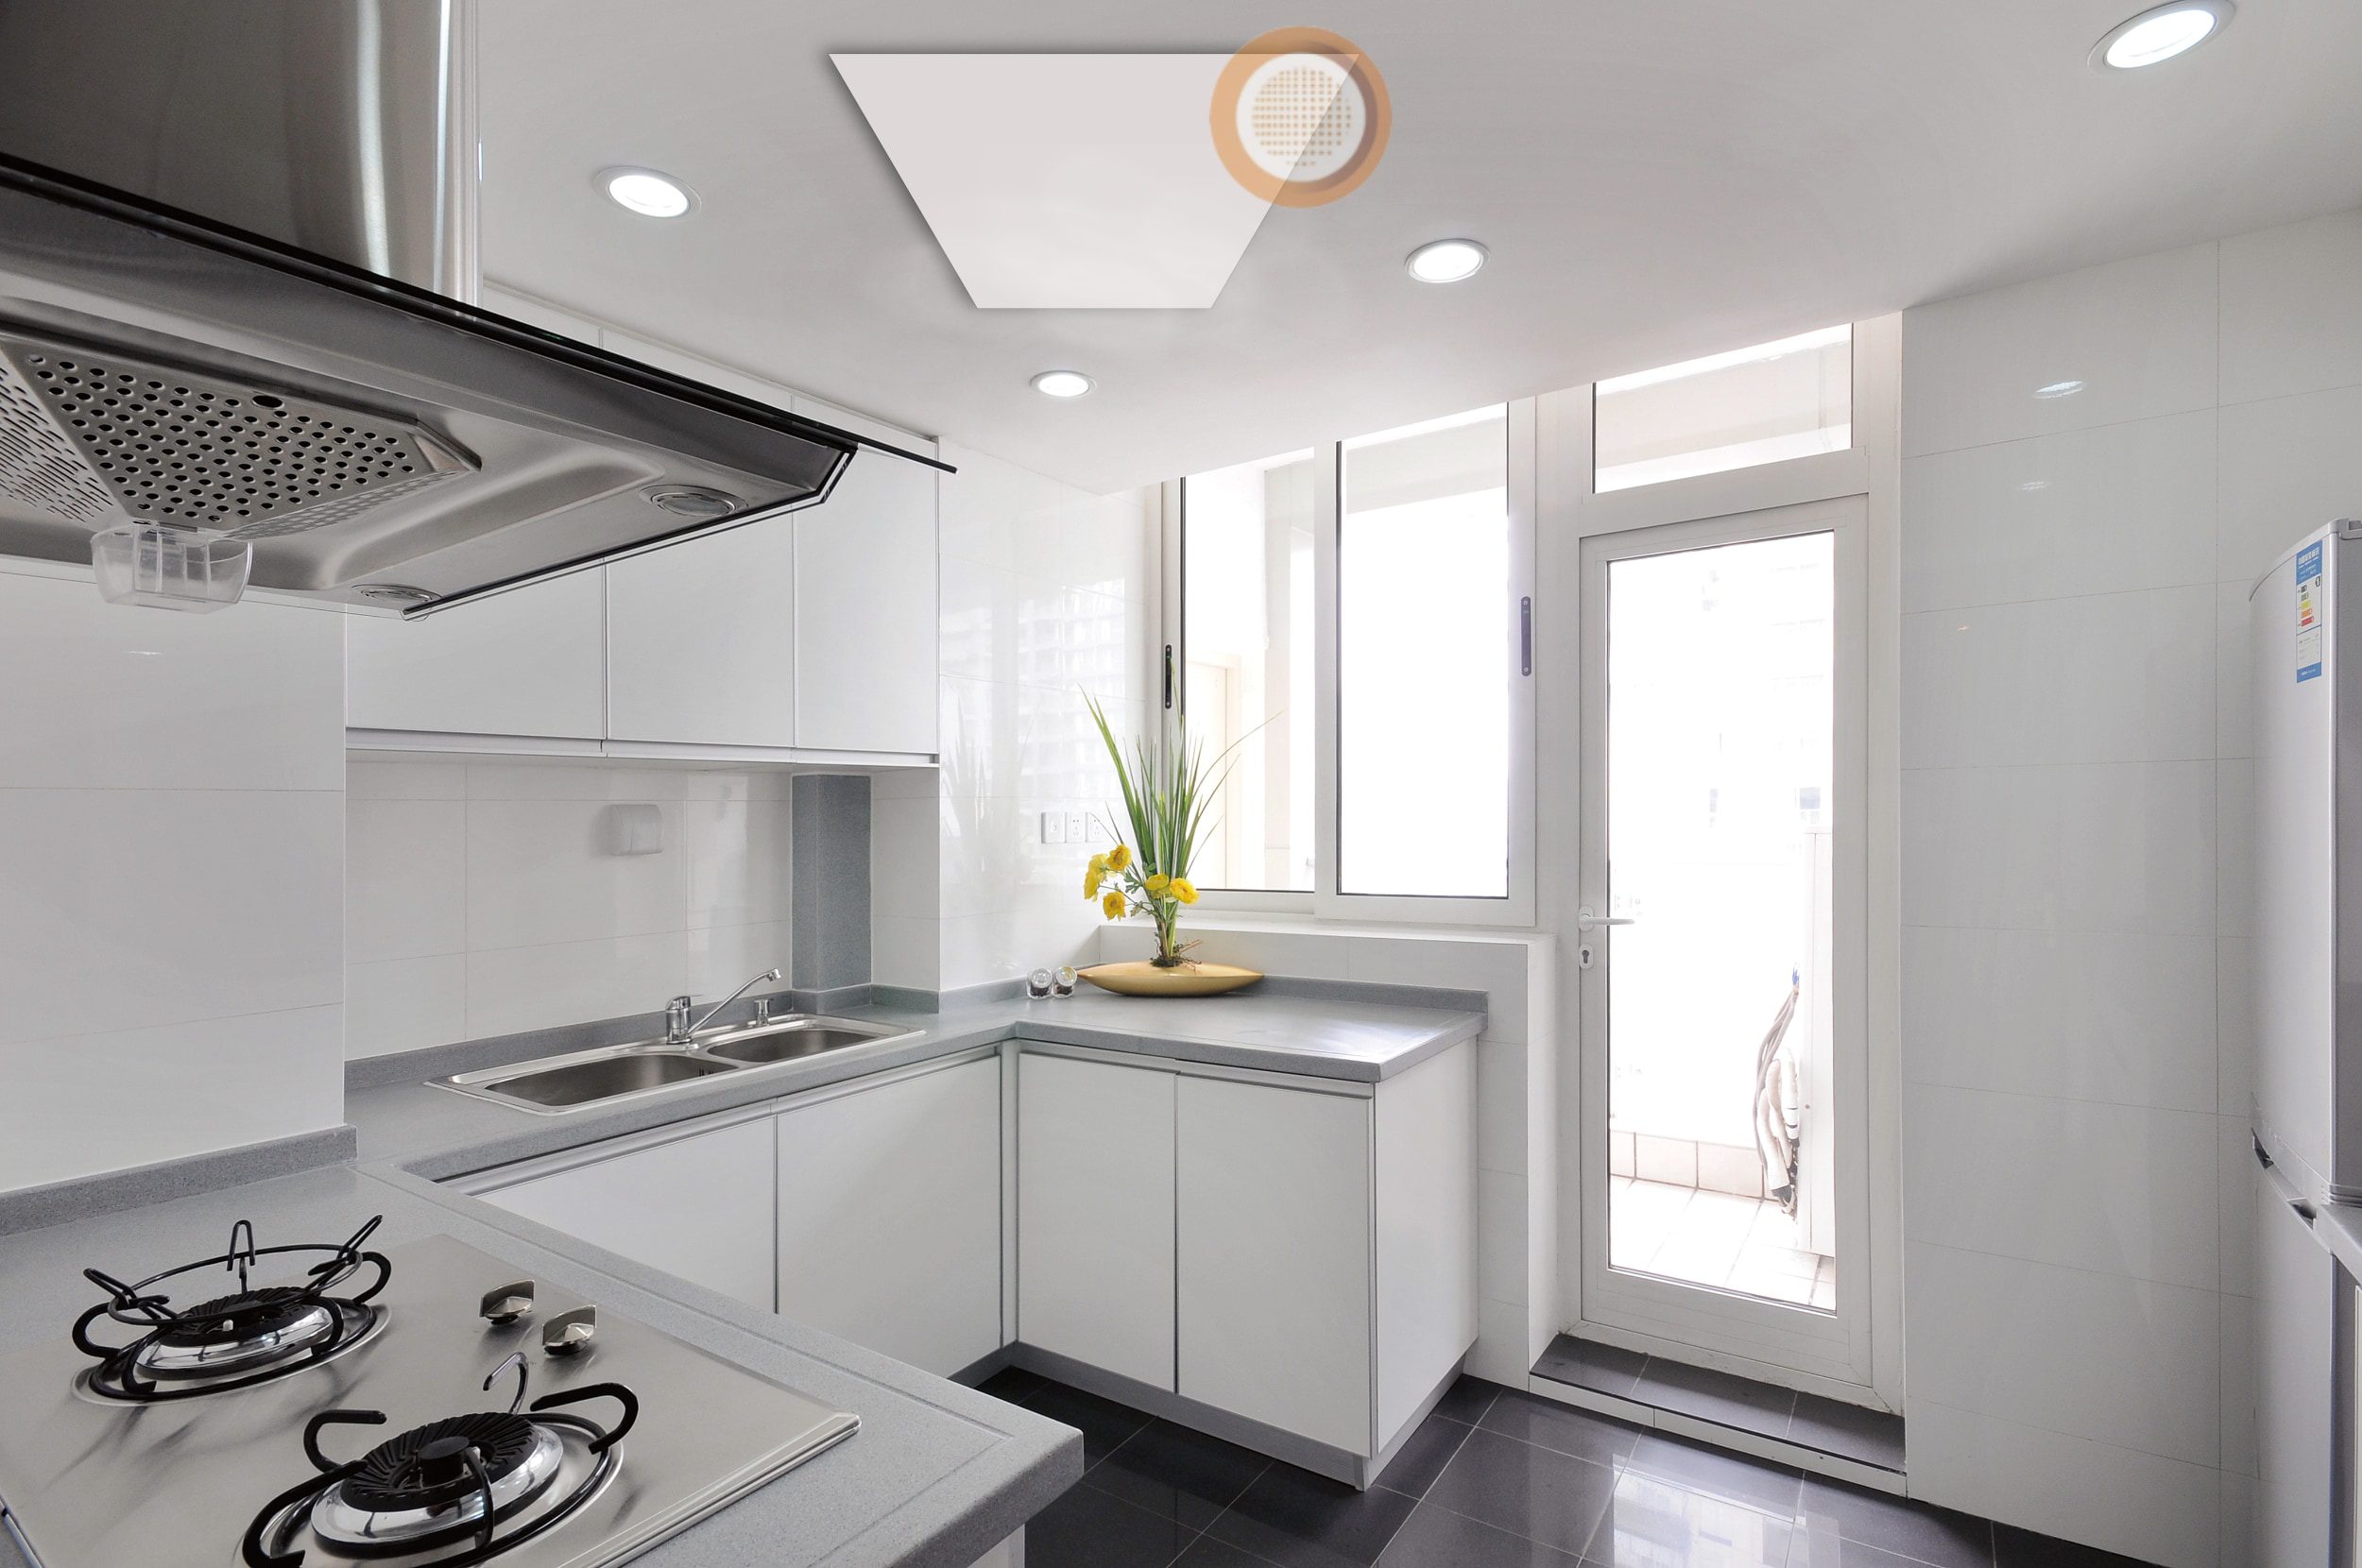 infrarood paneel plafond keuken paneel infrarood paneel verwarming